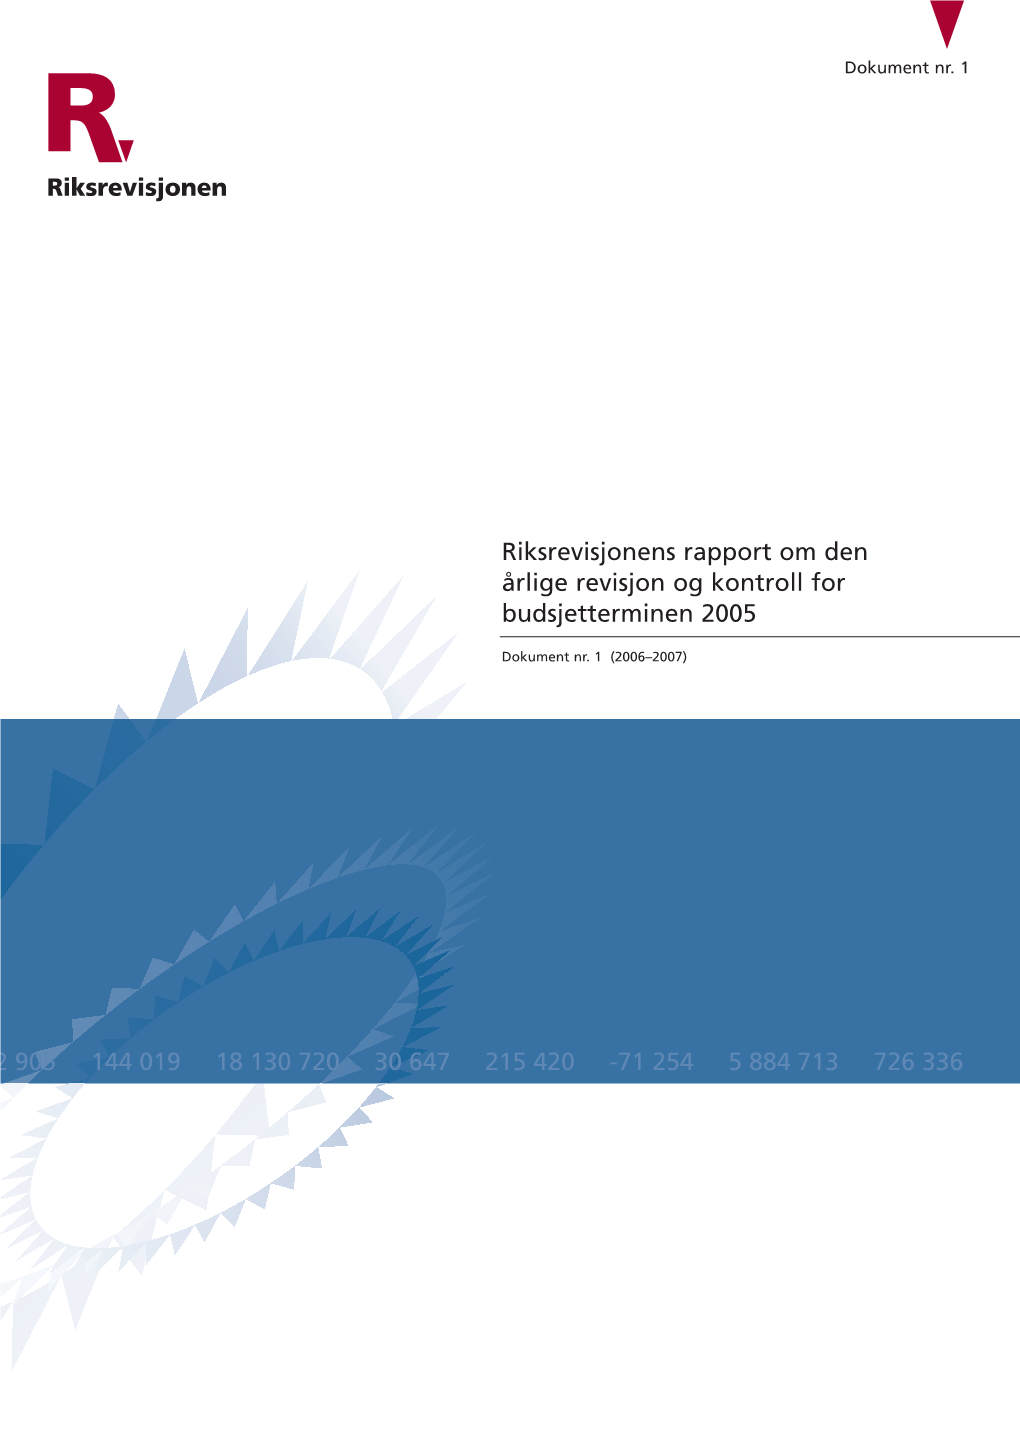 Riksrevisjonens Rapport Om Den Årlige Revisjon Og Kontroll for Budsjetterminen 2005